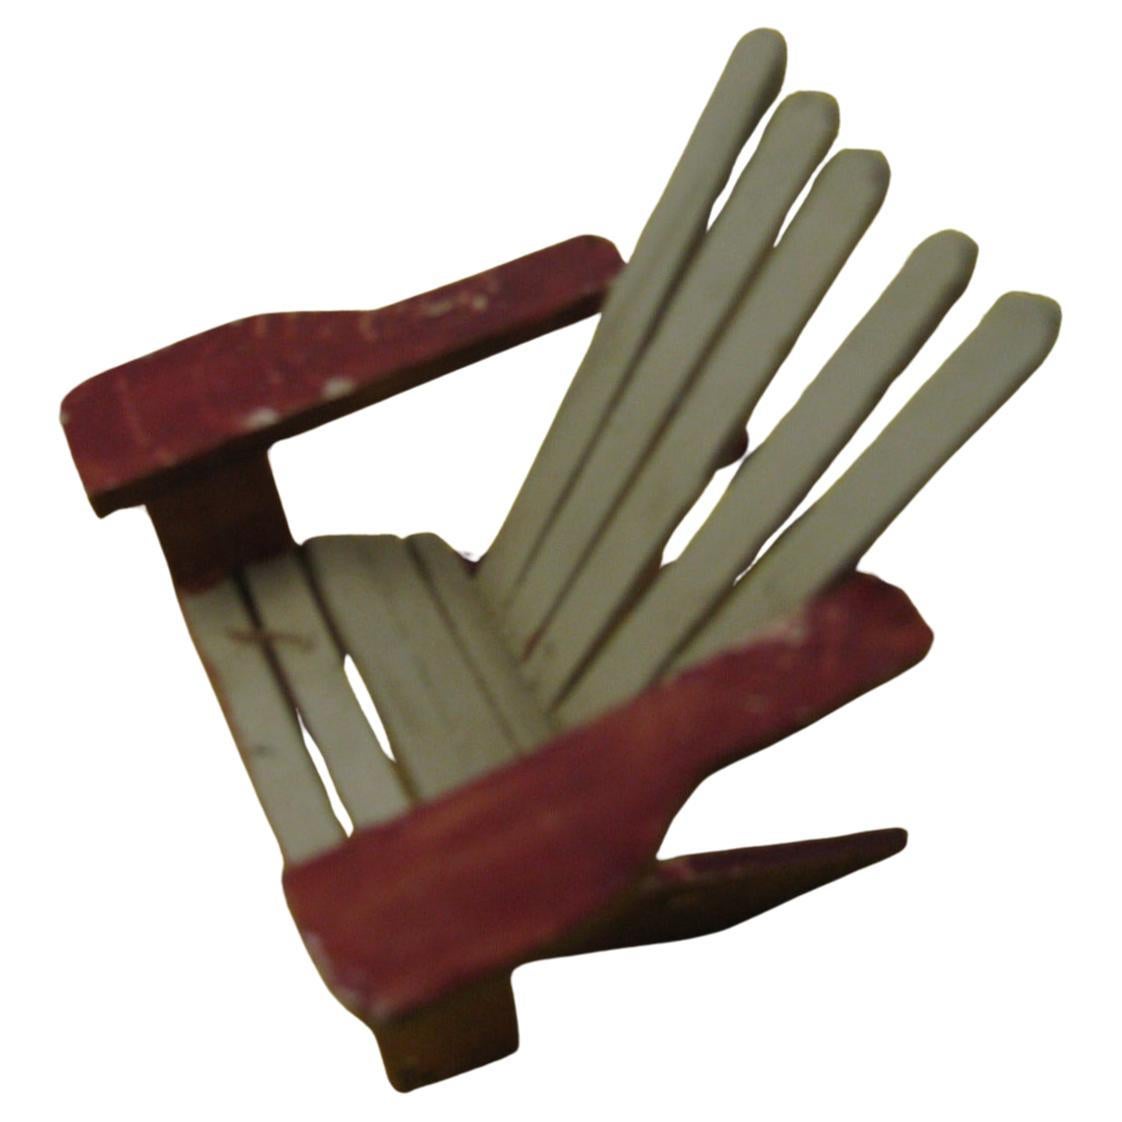 Einzigartige Stücke, Satz von 7 umfasst zwei-Sitz-Bank 3 Adirondack Classic Stil Stühle 1 Rad Barrel Stuhl 1 Tisch und 1 Regenschirm, die tatsächlich funktioniert. Alles handgefertigt und mit Originalfarbe. Die Größen sind Bank- H 3 B 4,25 T 2, 3